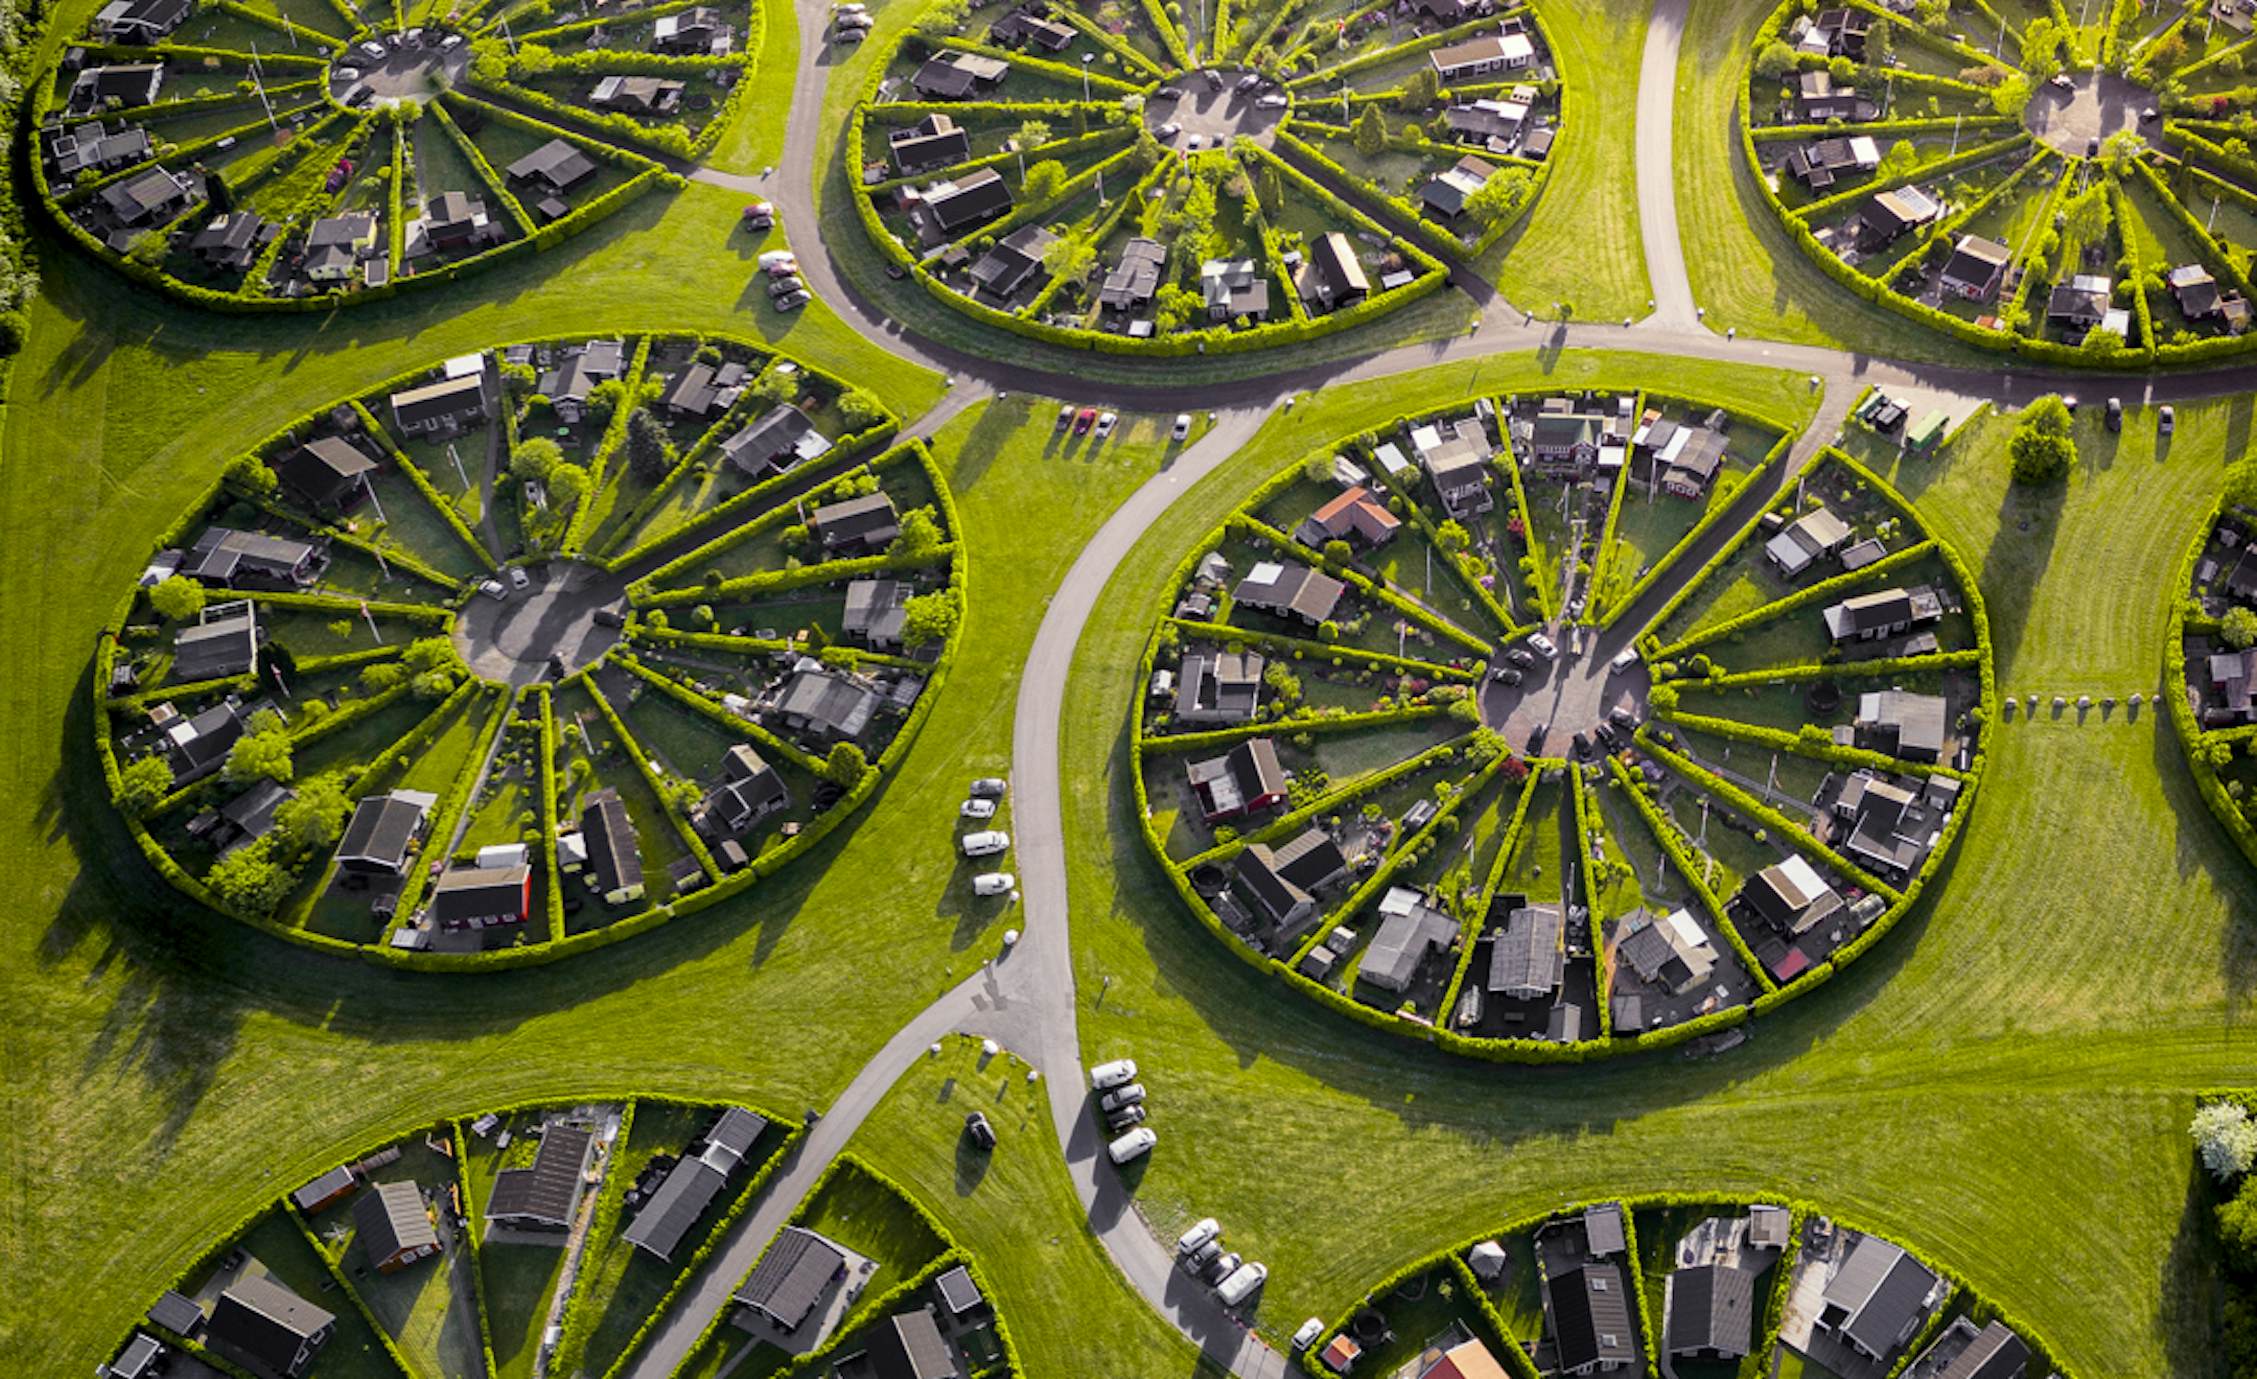 Denmark’s otherworldly circular “Garden City” as seen from above